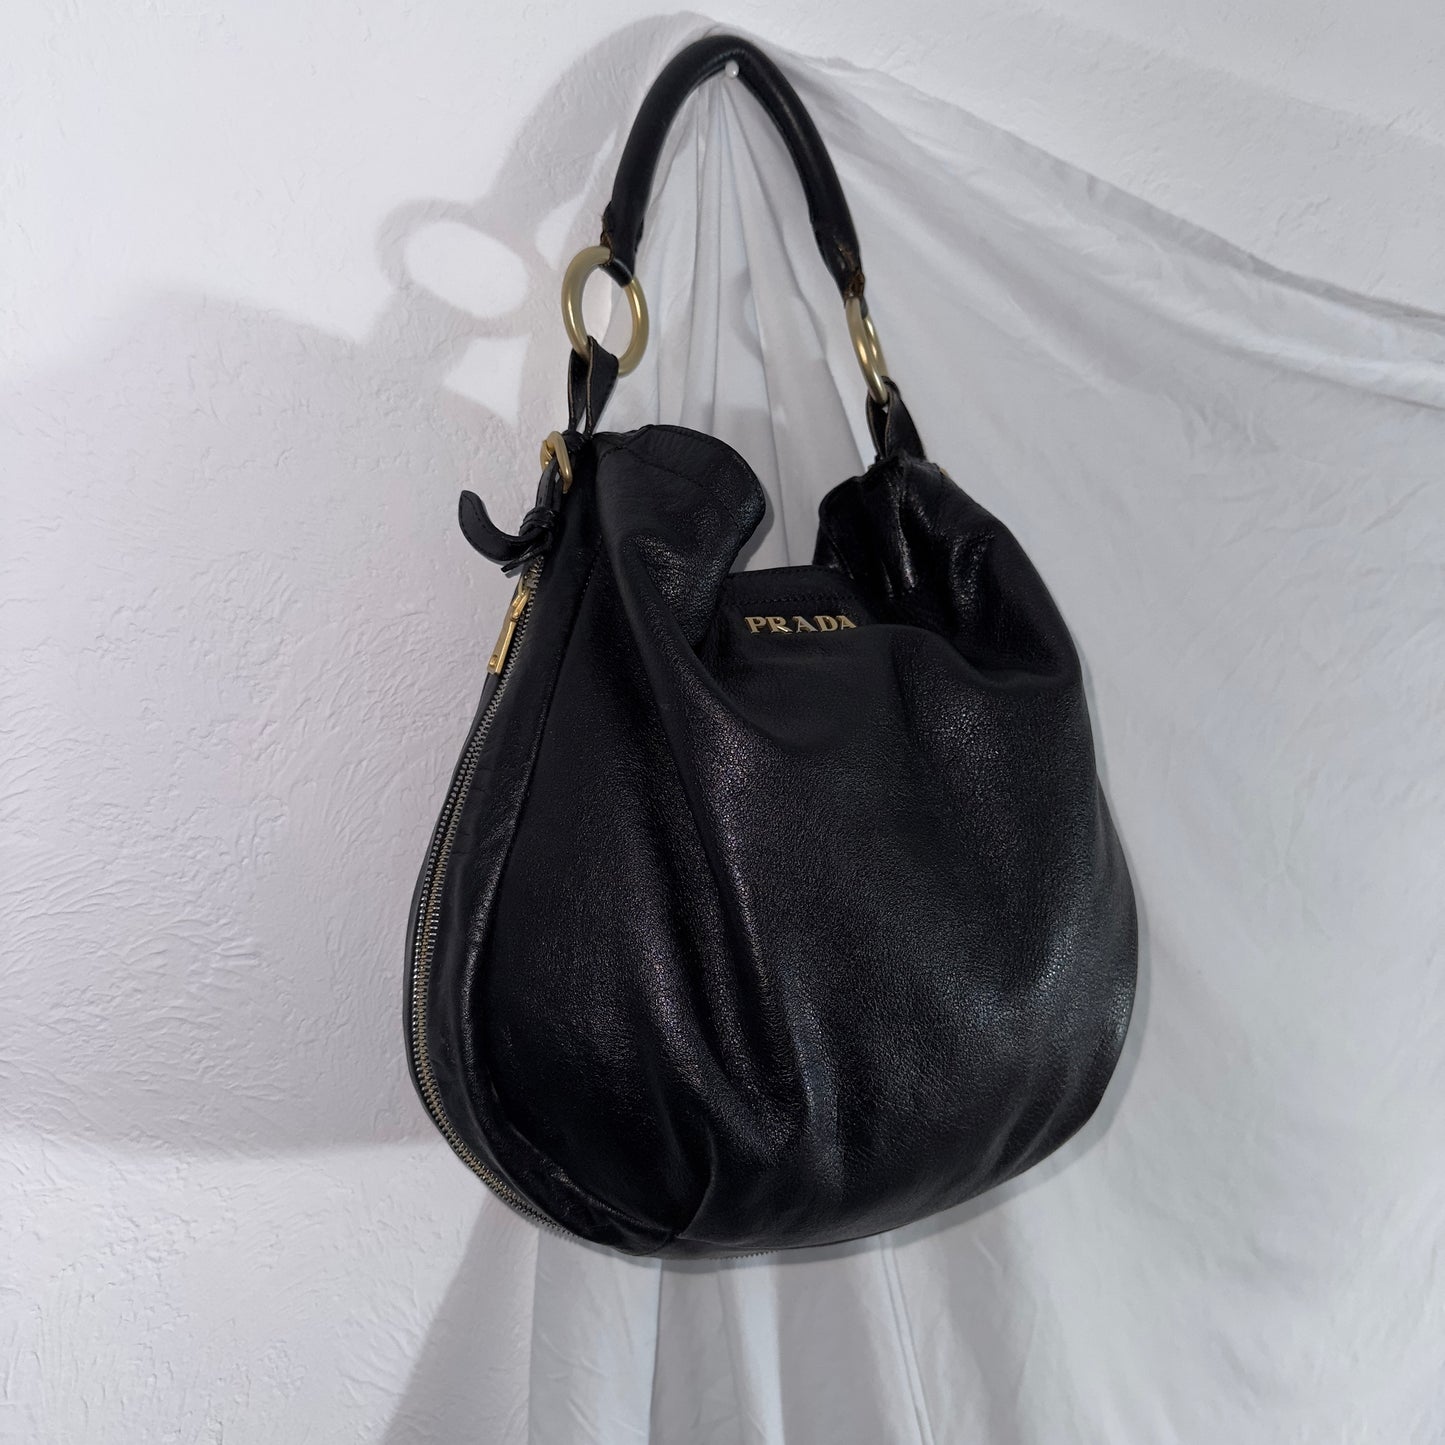 Prada Vintage Leather Hobo Bag